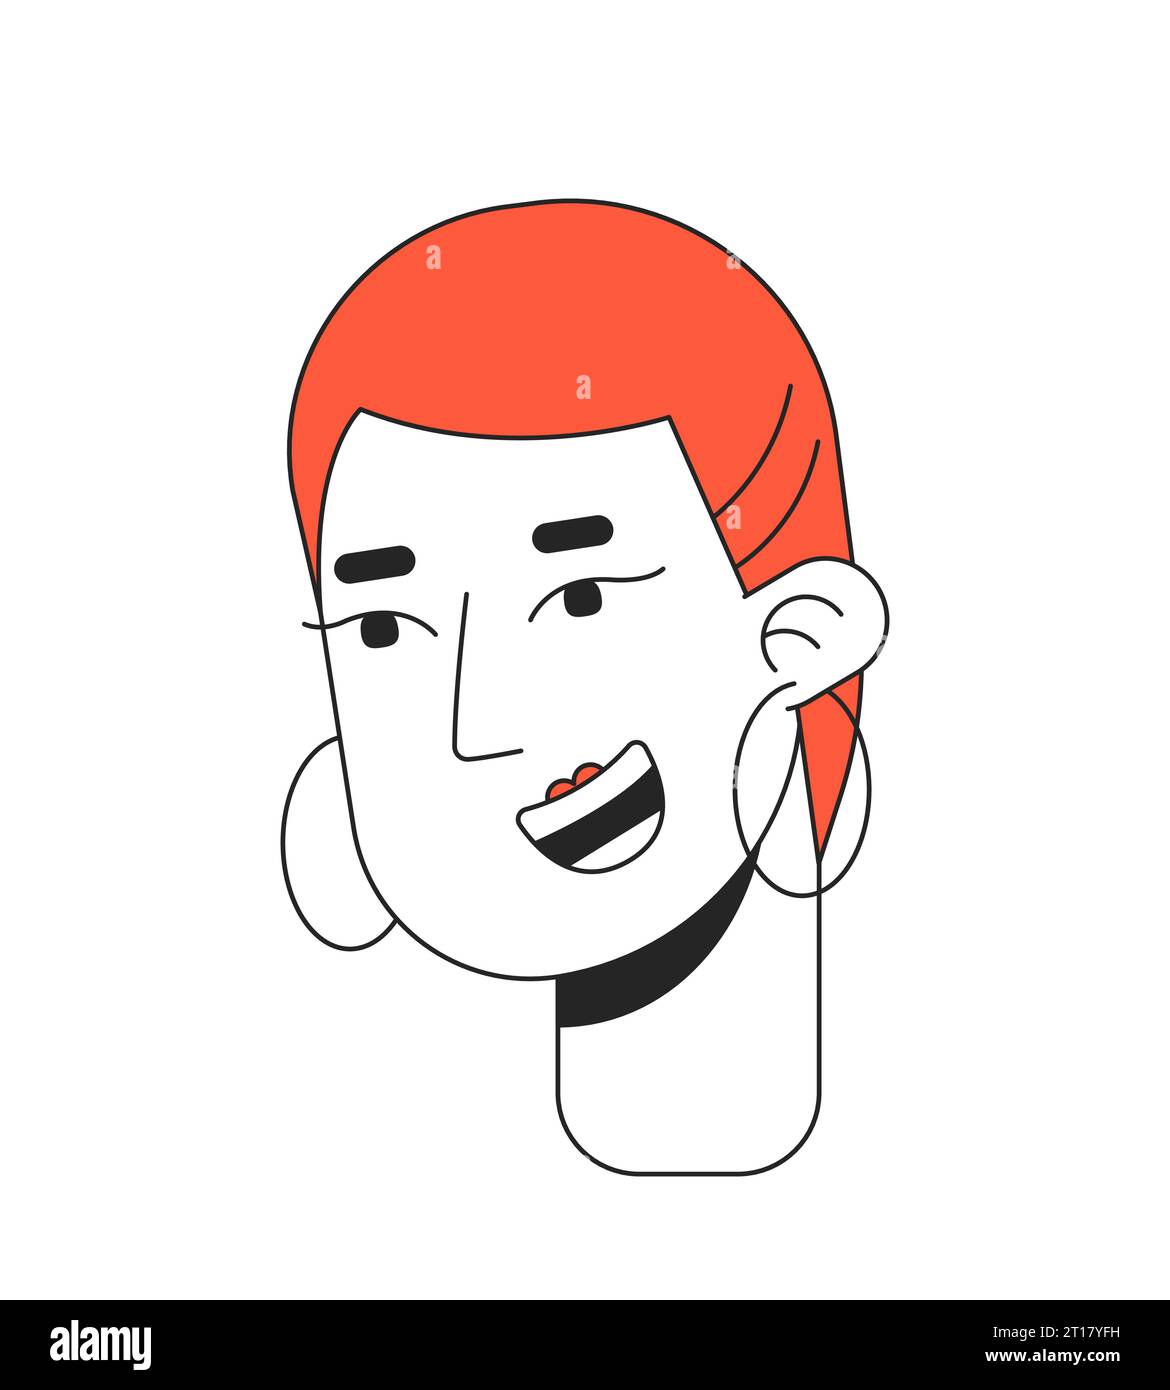 Indossa canestro donna audace con la testa corta dei personaggi dei cartoni animati lineari 2D dal taglio rosso sbiadito Illustrazione Vettoriale